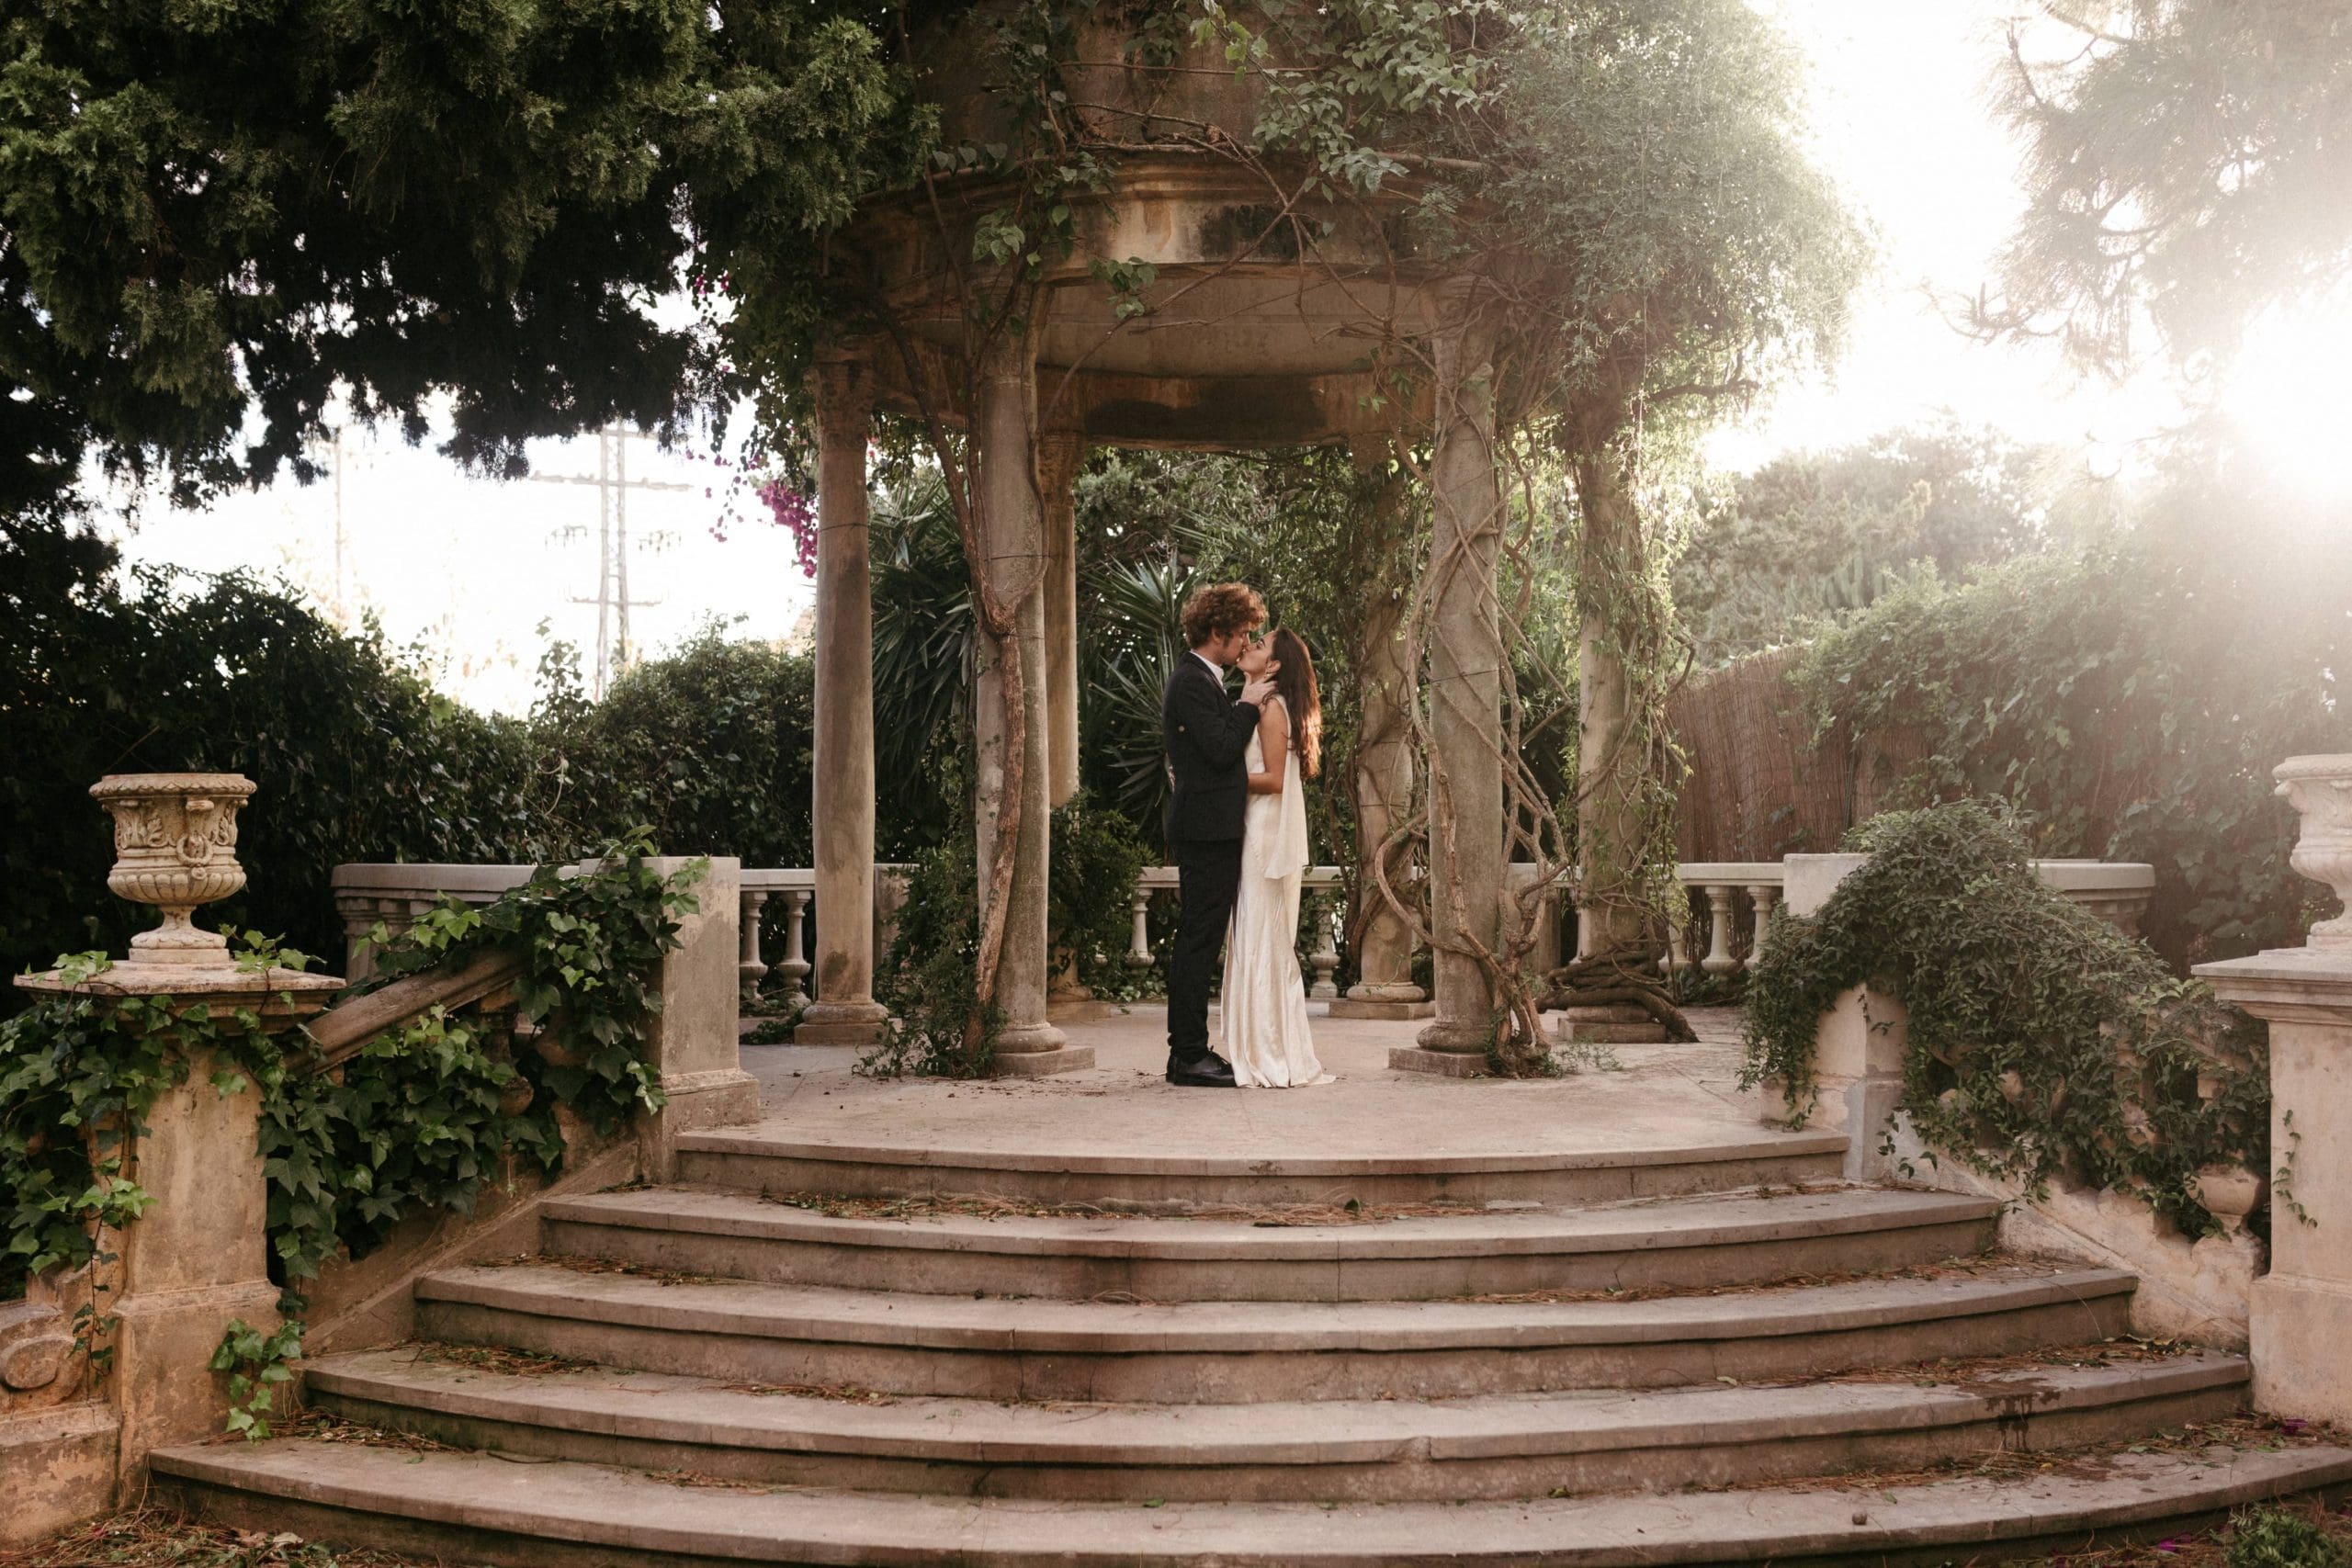 Fotografía en "Hola Novias" mostrando a una pareja besándose en el altar decorado por Bouclé Weddings.